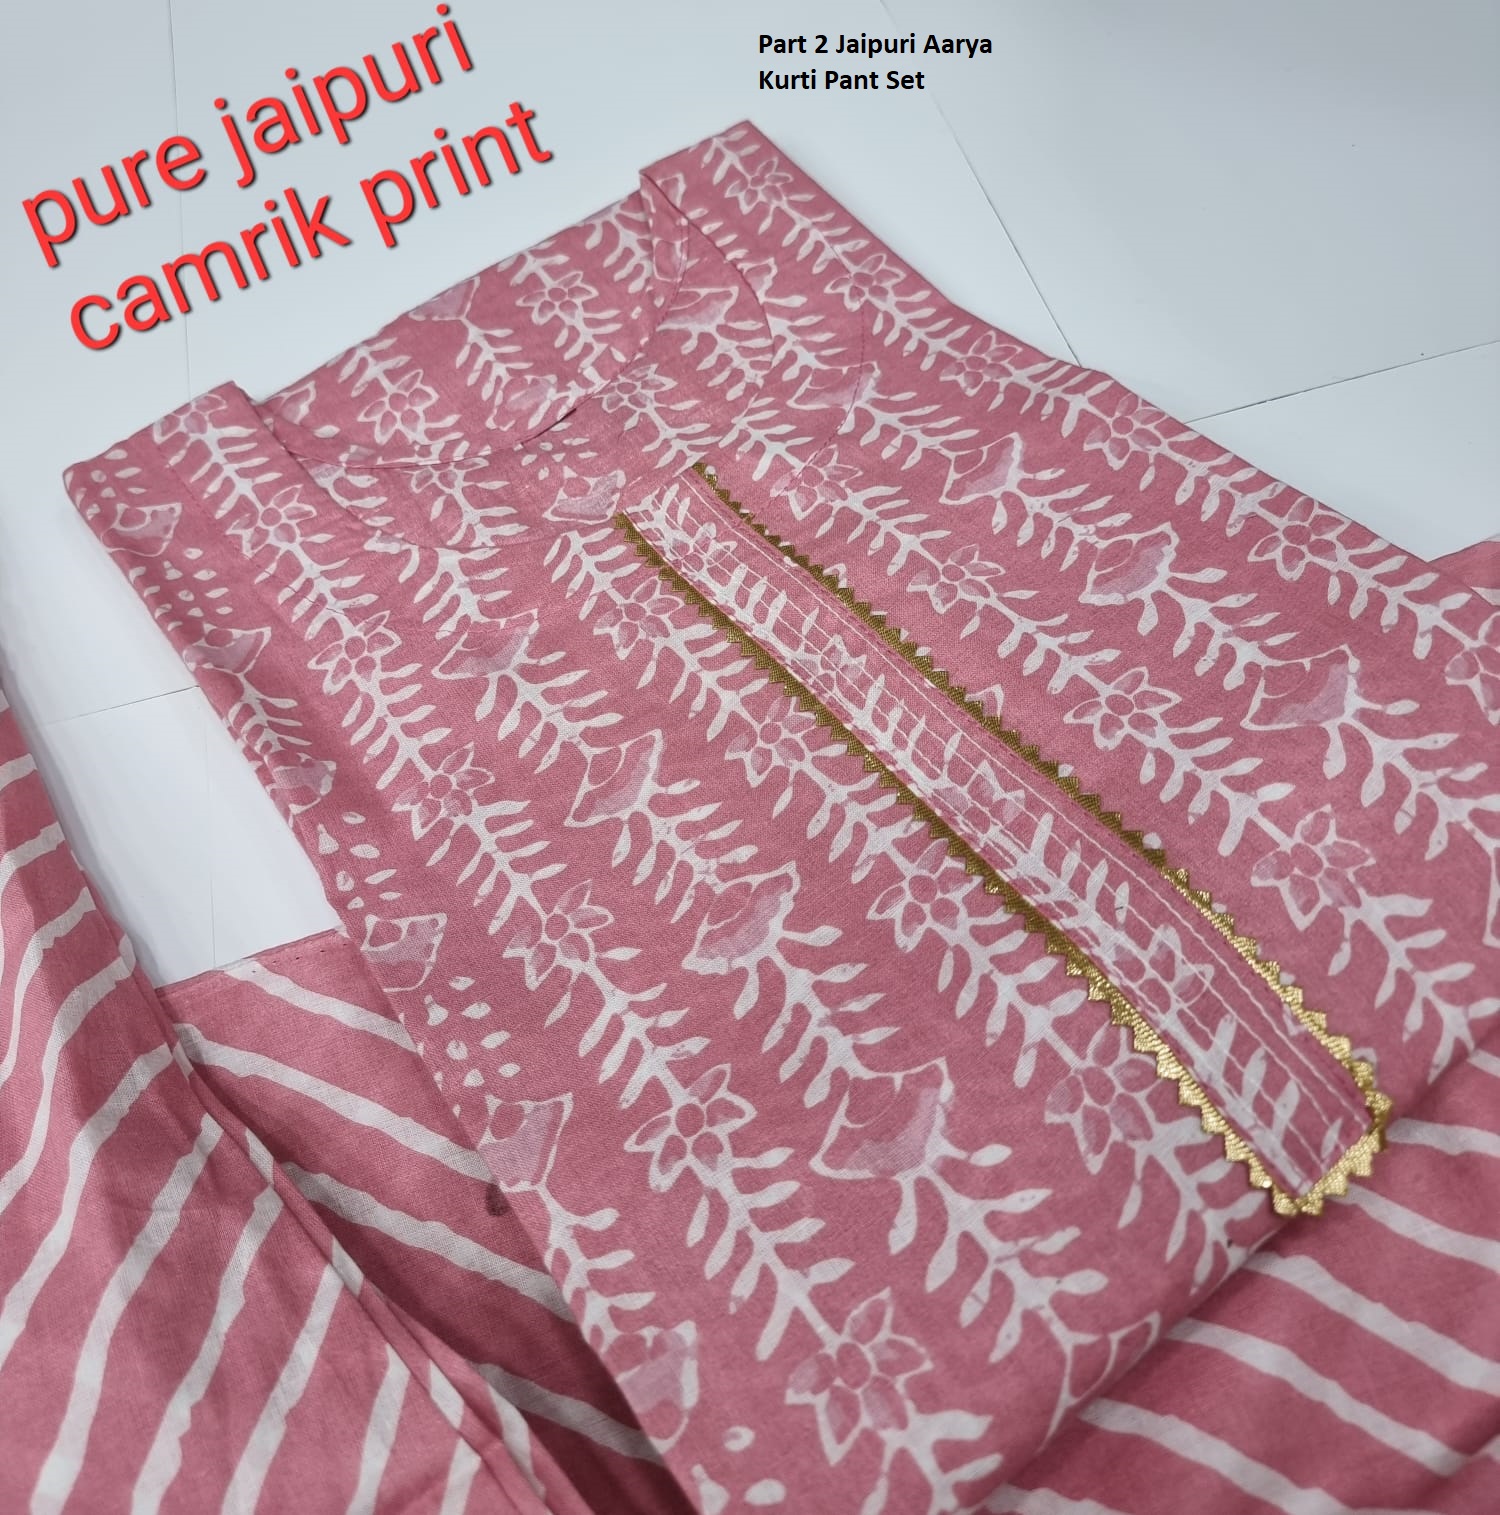 Aarya Part 2 Jaipuri Designer Kurtis Pant Set Catalog Lowest Price